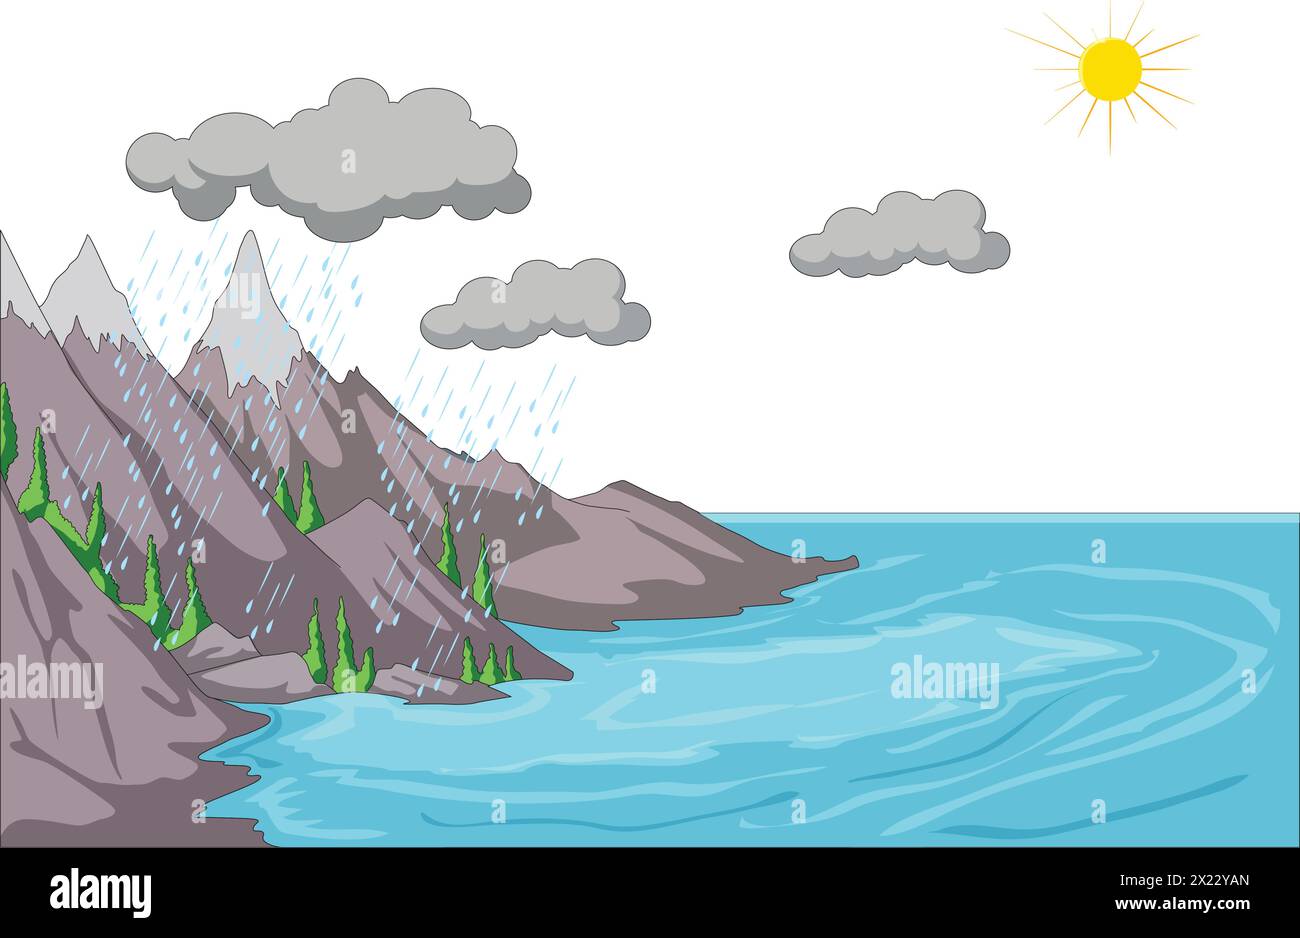 Vektor-Vektor-Illustration, die Fluss, Berge, Wolken und Sonne zeigt Stock Vektor